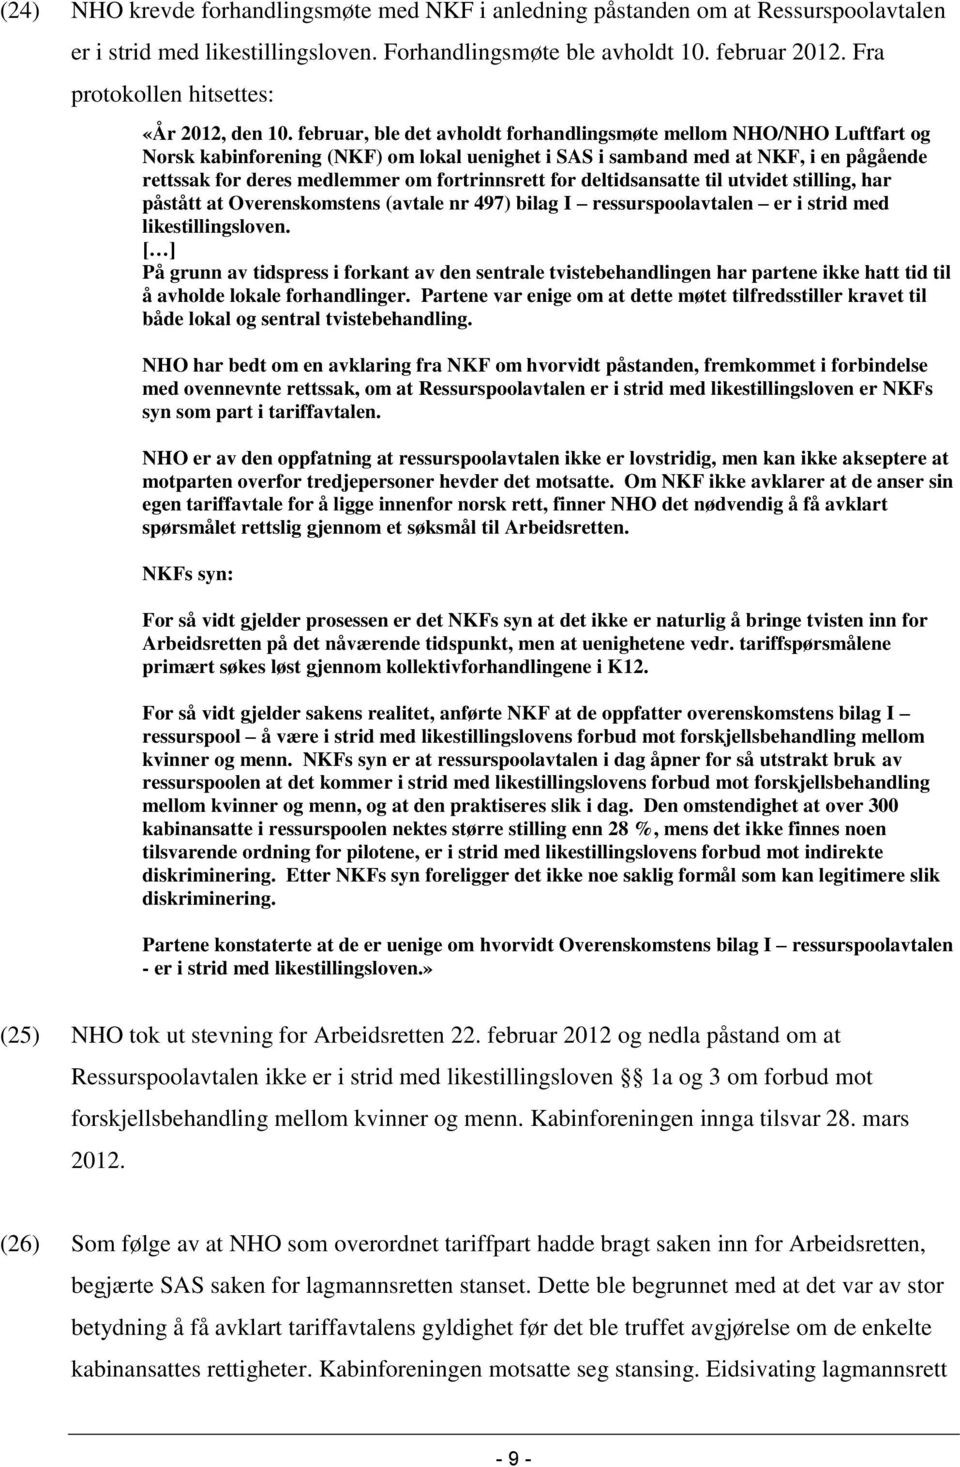 februar, ble det avholdt forhandlingsmøte mellom NHO/NHO Luftfart og Norsk kabinforening (NKF) om lokal uenighet i SAS i samband med at NKF, i en pågående rettssak for deres medlemmer om